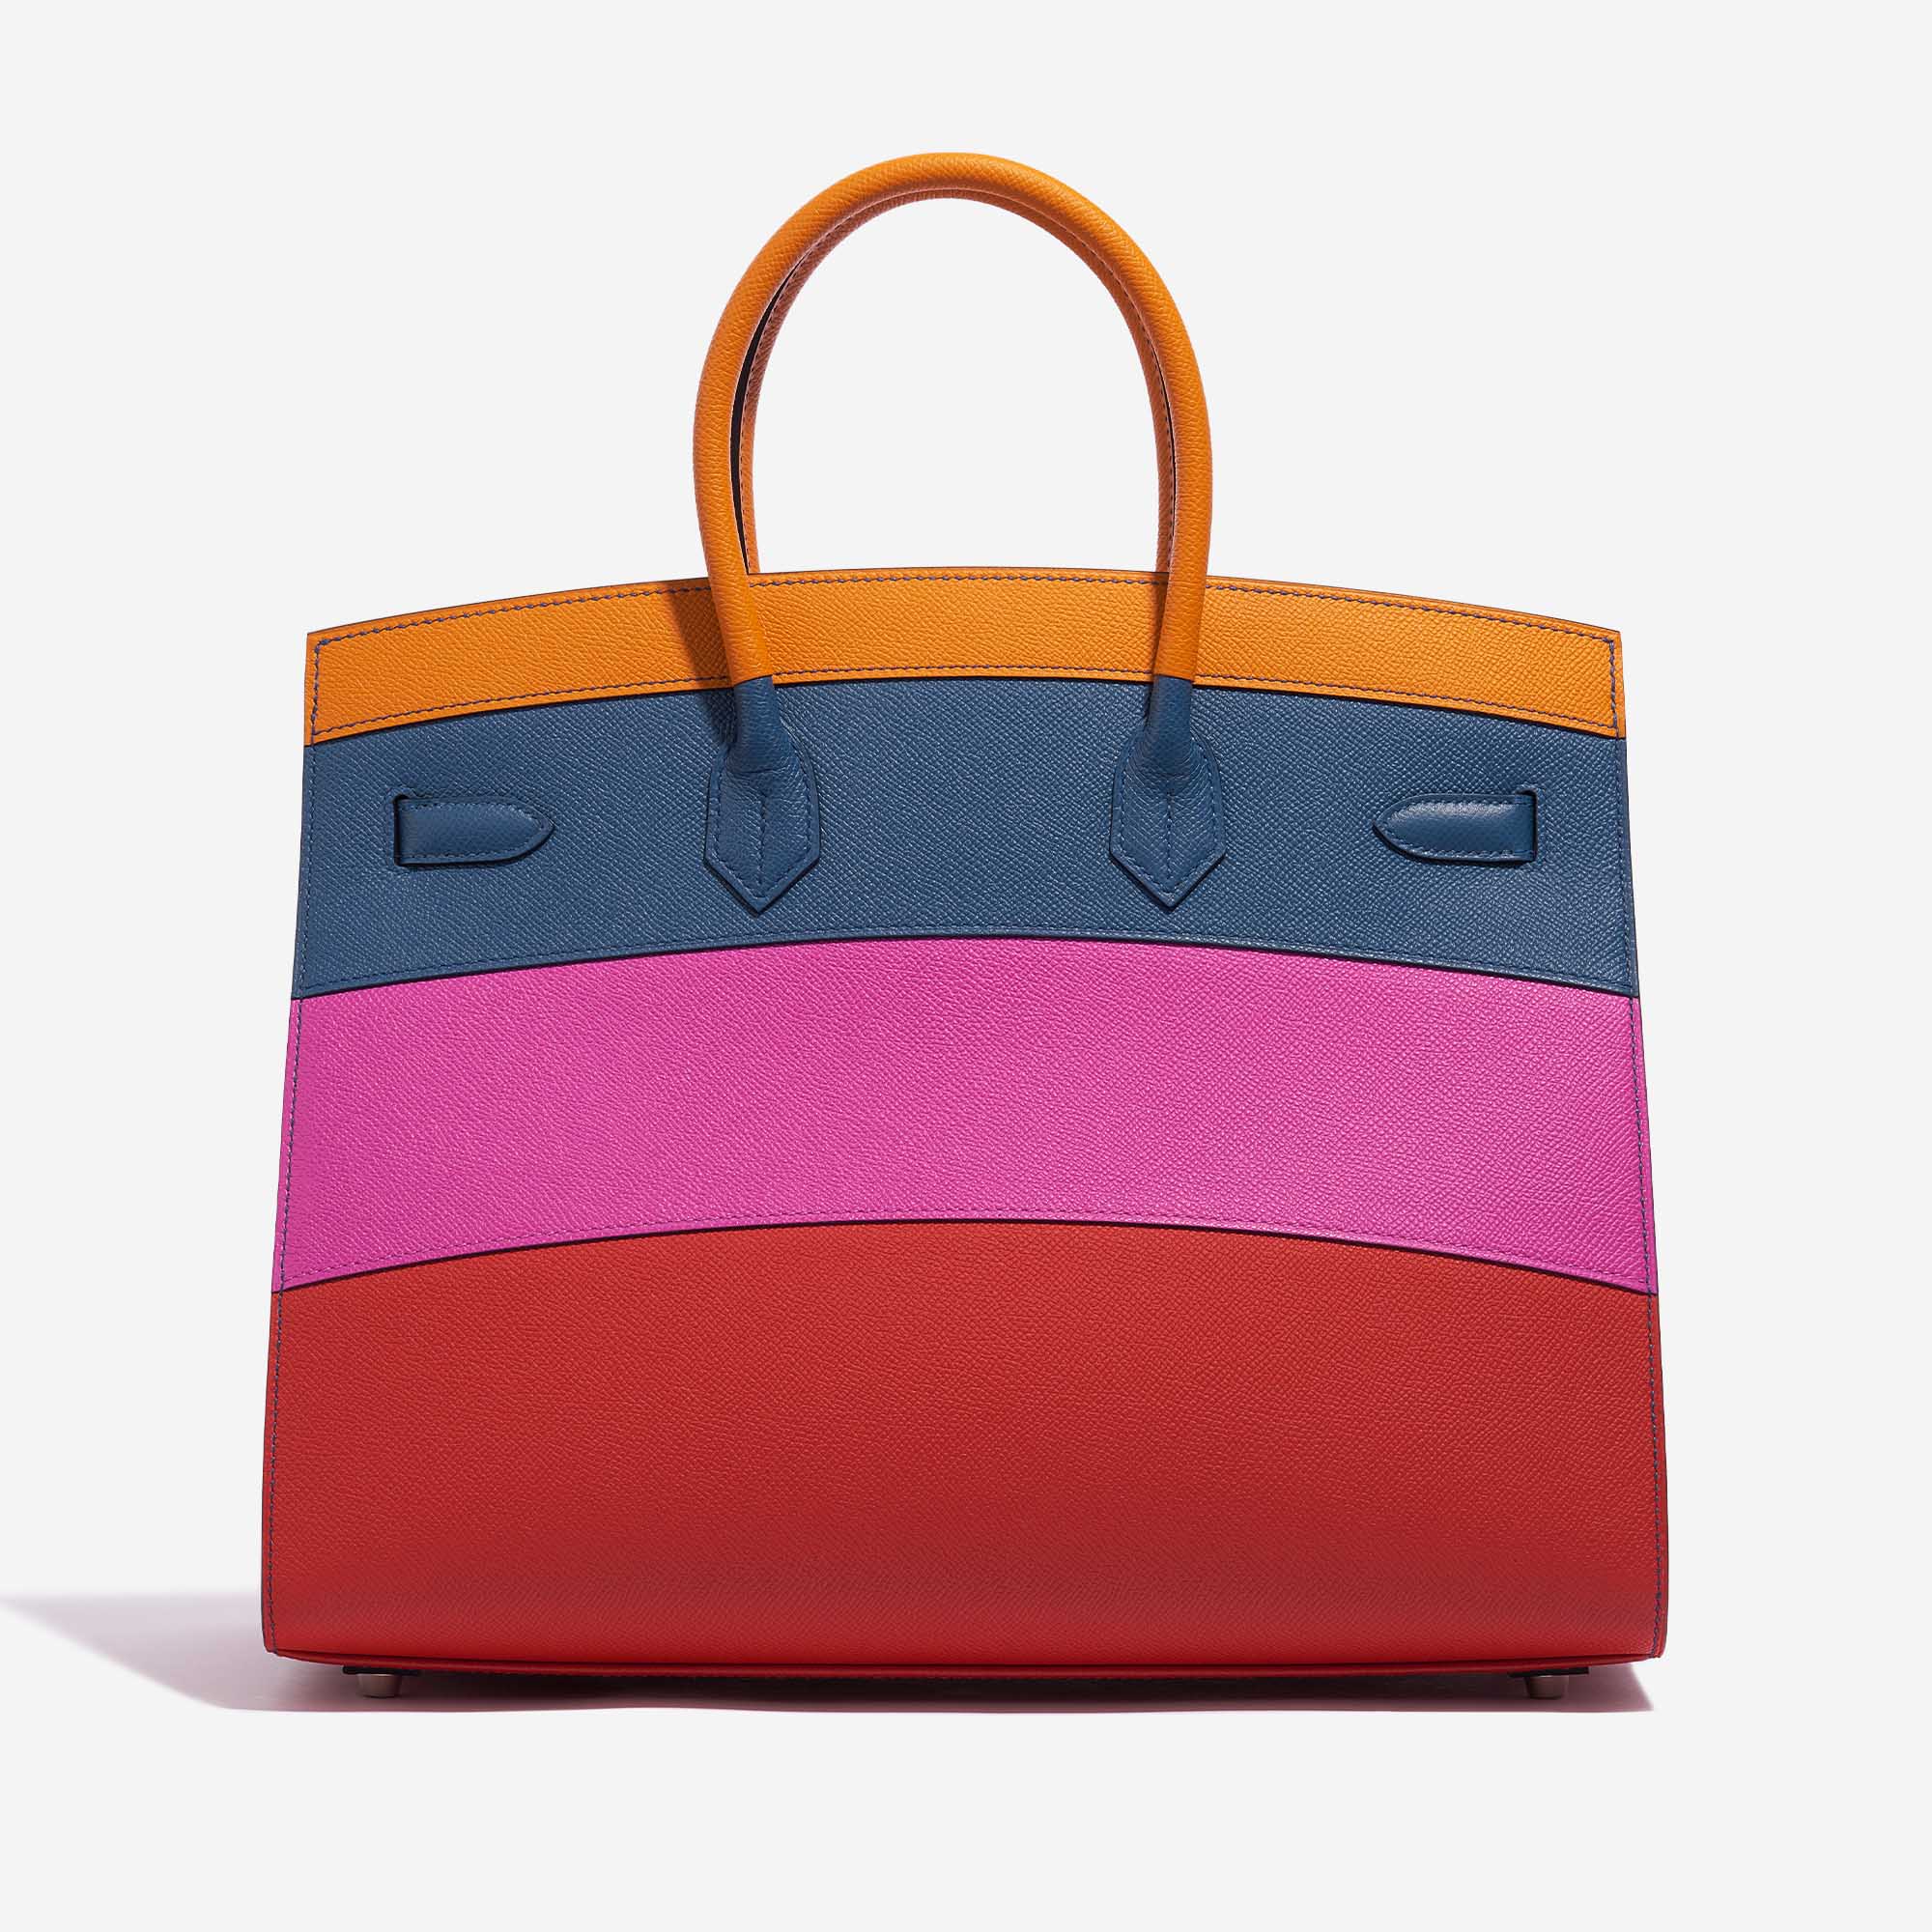 Gebrauchte Hermès Tasche Birkin 35 Sunset Rainbow Epsom Apricot / Blue Achat / Magnolia / Rouge Casaque Multicolour Zurück | Verkaufen Sie Ihre Designer-Tasche auf Saclab.com